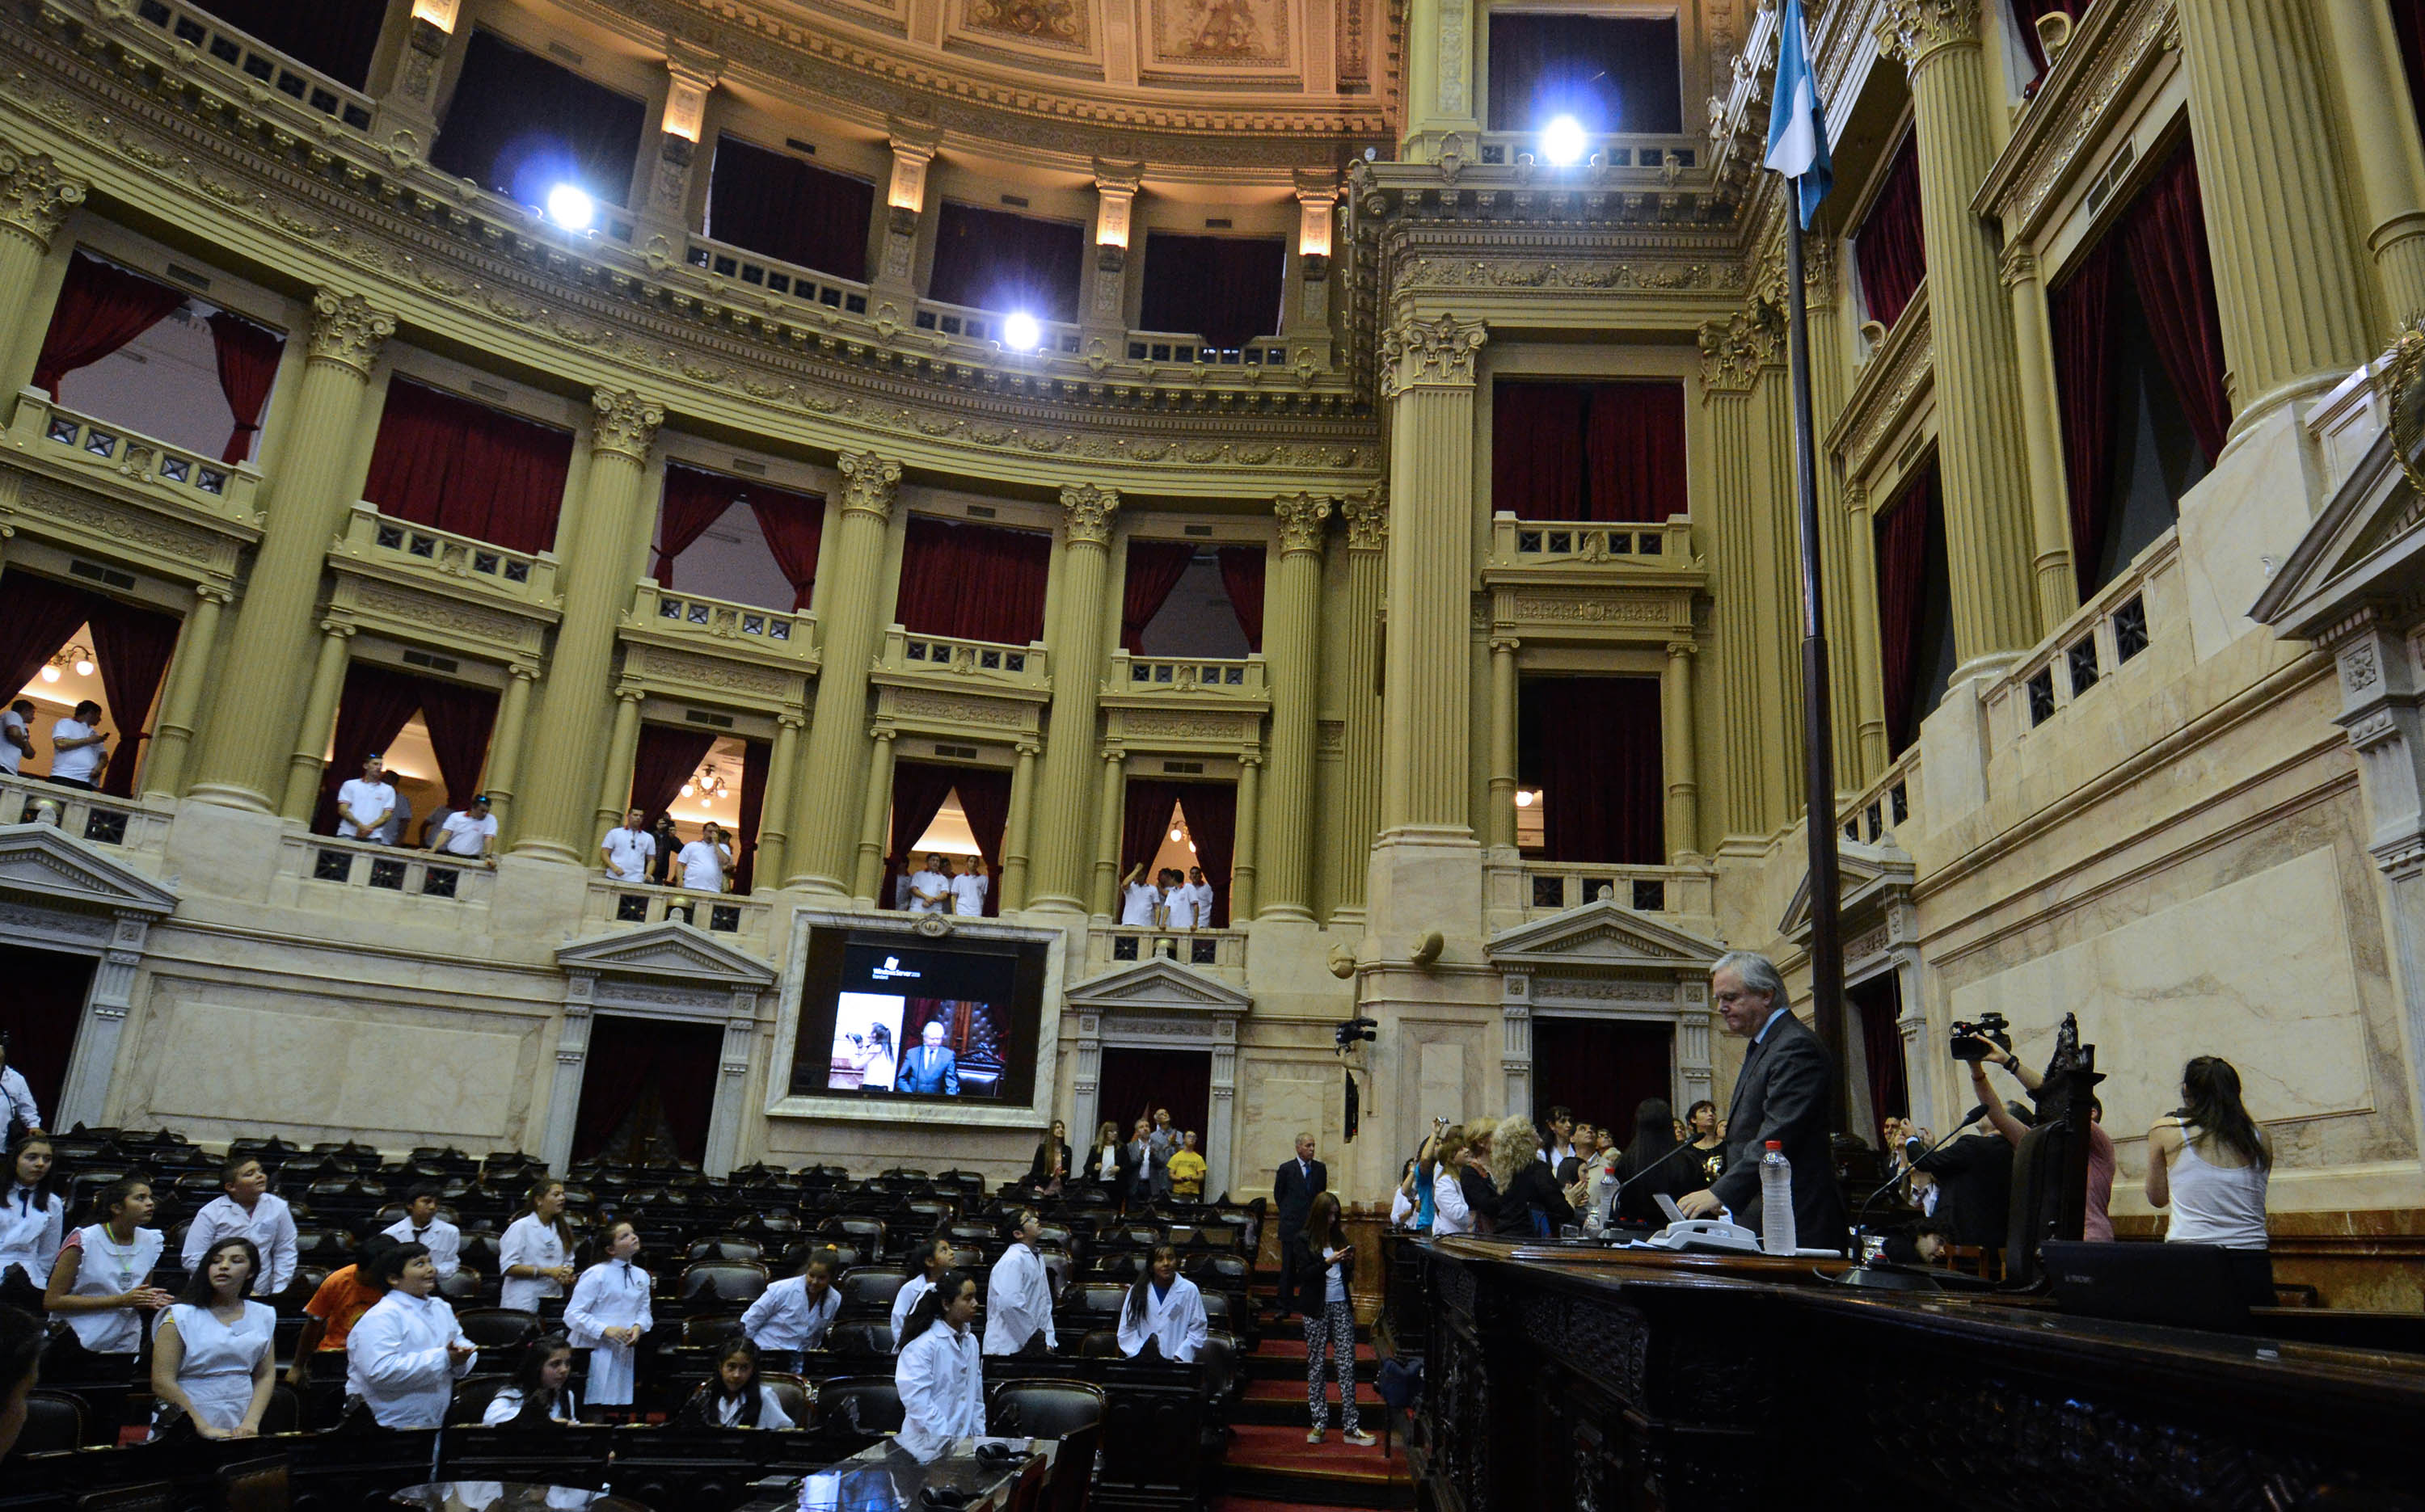 El parlamento nacional infantil sesionando (Sofía 